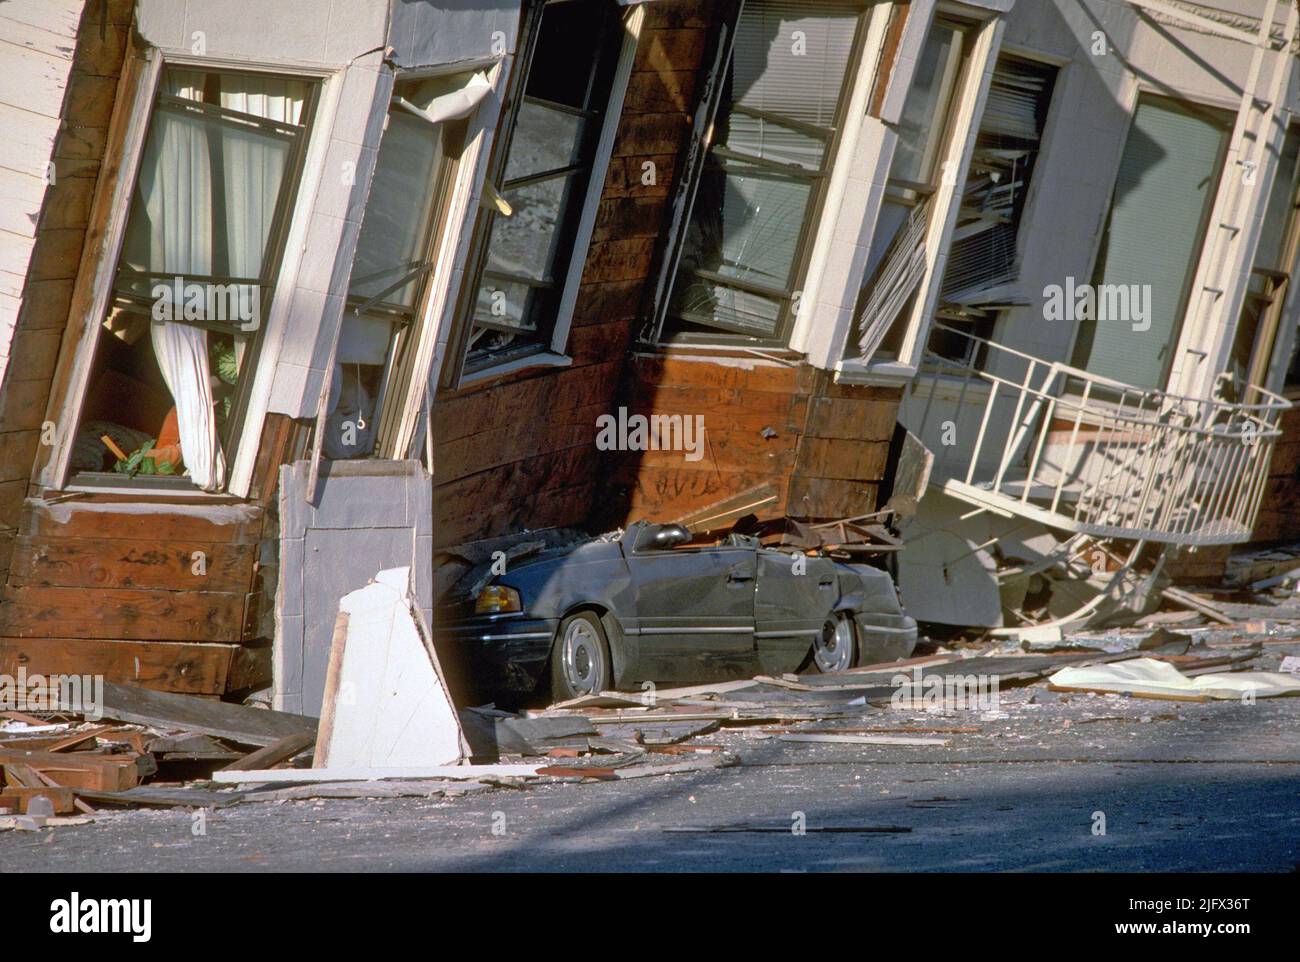 Am 17. Oktober 1989, um 5:04pm Uhr (PDT), erschütterte ein Erdbeben der Stärke 6,9 die Regionen San Francisco und Monterey Bay in Kalifornien, USA. Hier wurde ein Auto im dritten Stock dieses Apartmentgebäudes im Marina District zerquetscht. Das Epizentrum befand sich in der Nähe des Loma Prieta Gipfels in den Santa Cruz Bergen. Die Arbeit des U.S. Geological Survey und anderer Organisationen hat das Verständnis der seismischen Bedrohung in der Bay-Region verbessert, das Bewusstsein für Erdbebengefahren gefördert und zu effektiveren Strategien zur Reduzierung von Erdbebenverlusten beigetragen.Quelle: J.K.Nakata/USGS Stockfoto